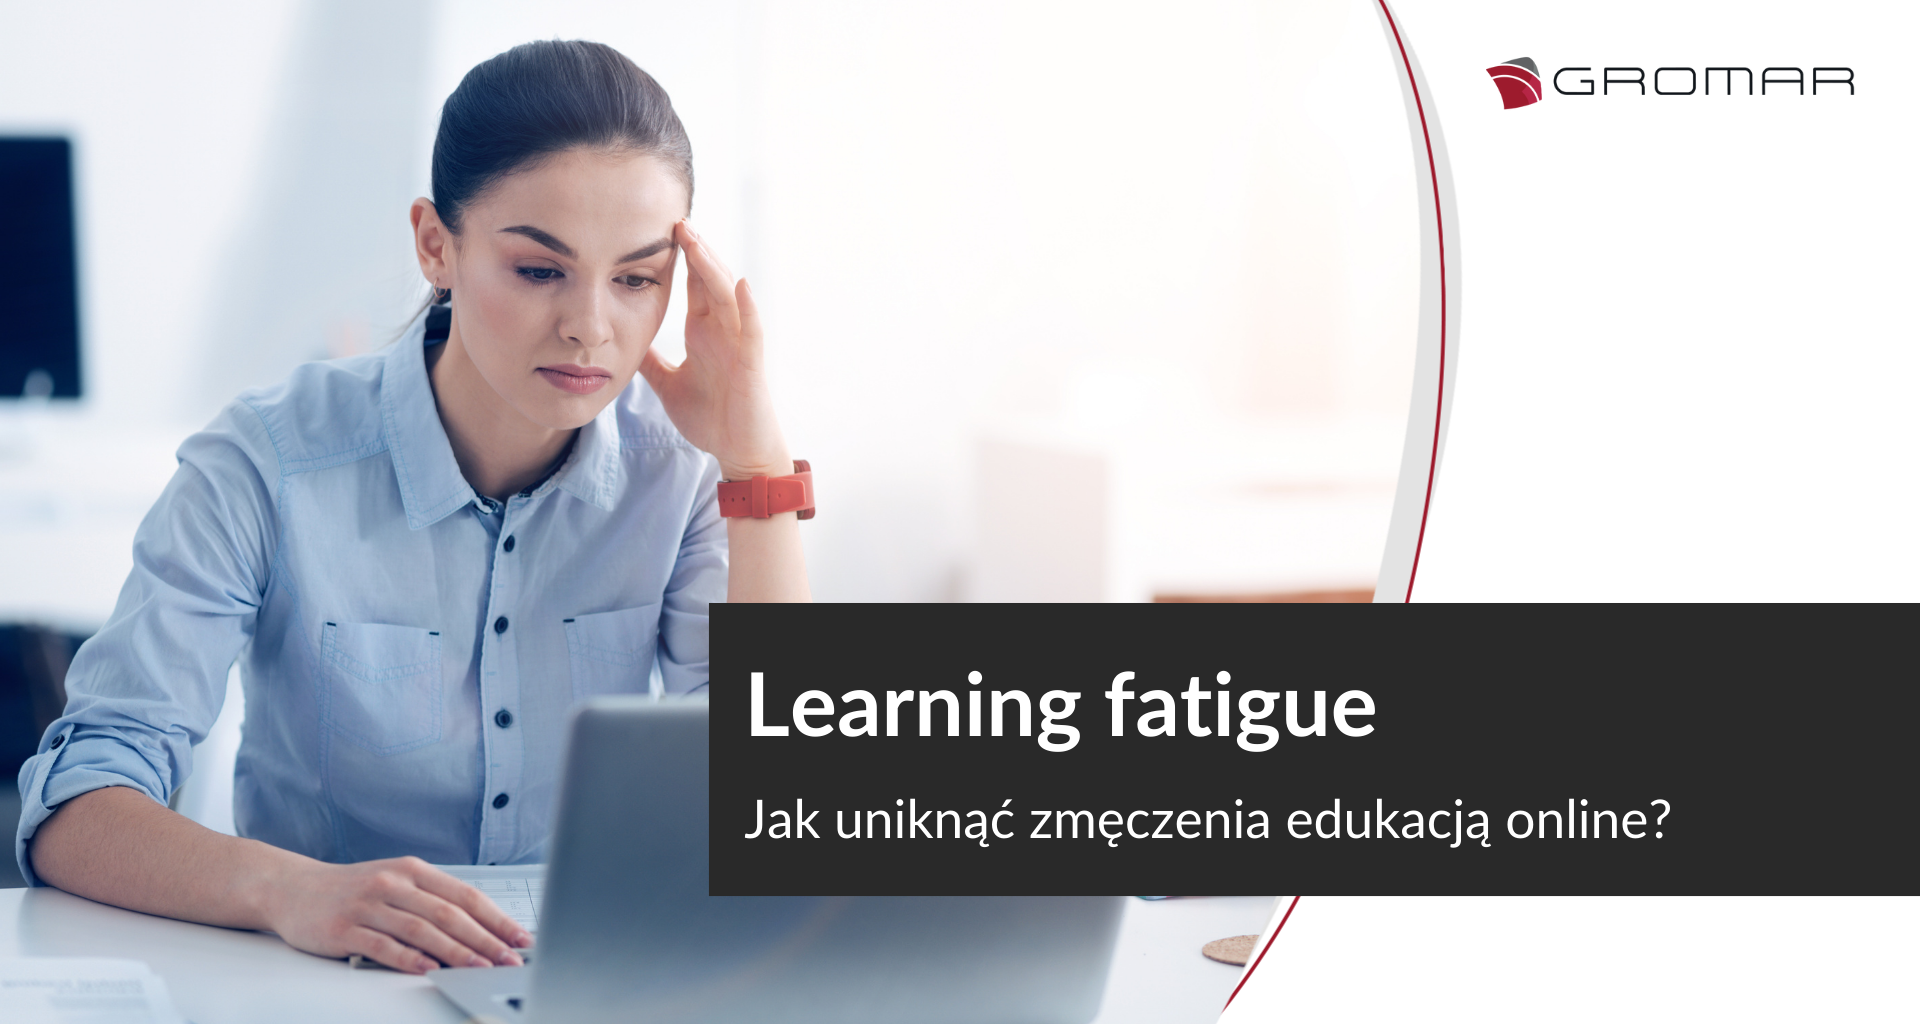 Learning fatigue - jak uniknąć zmęczenia edukacją online?